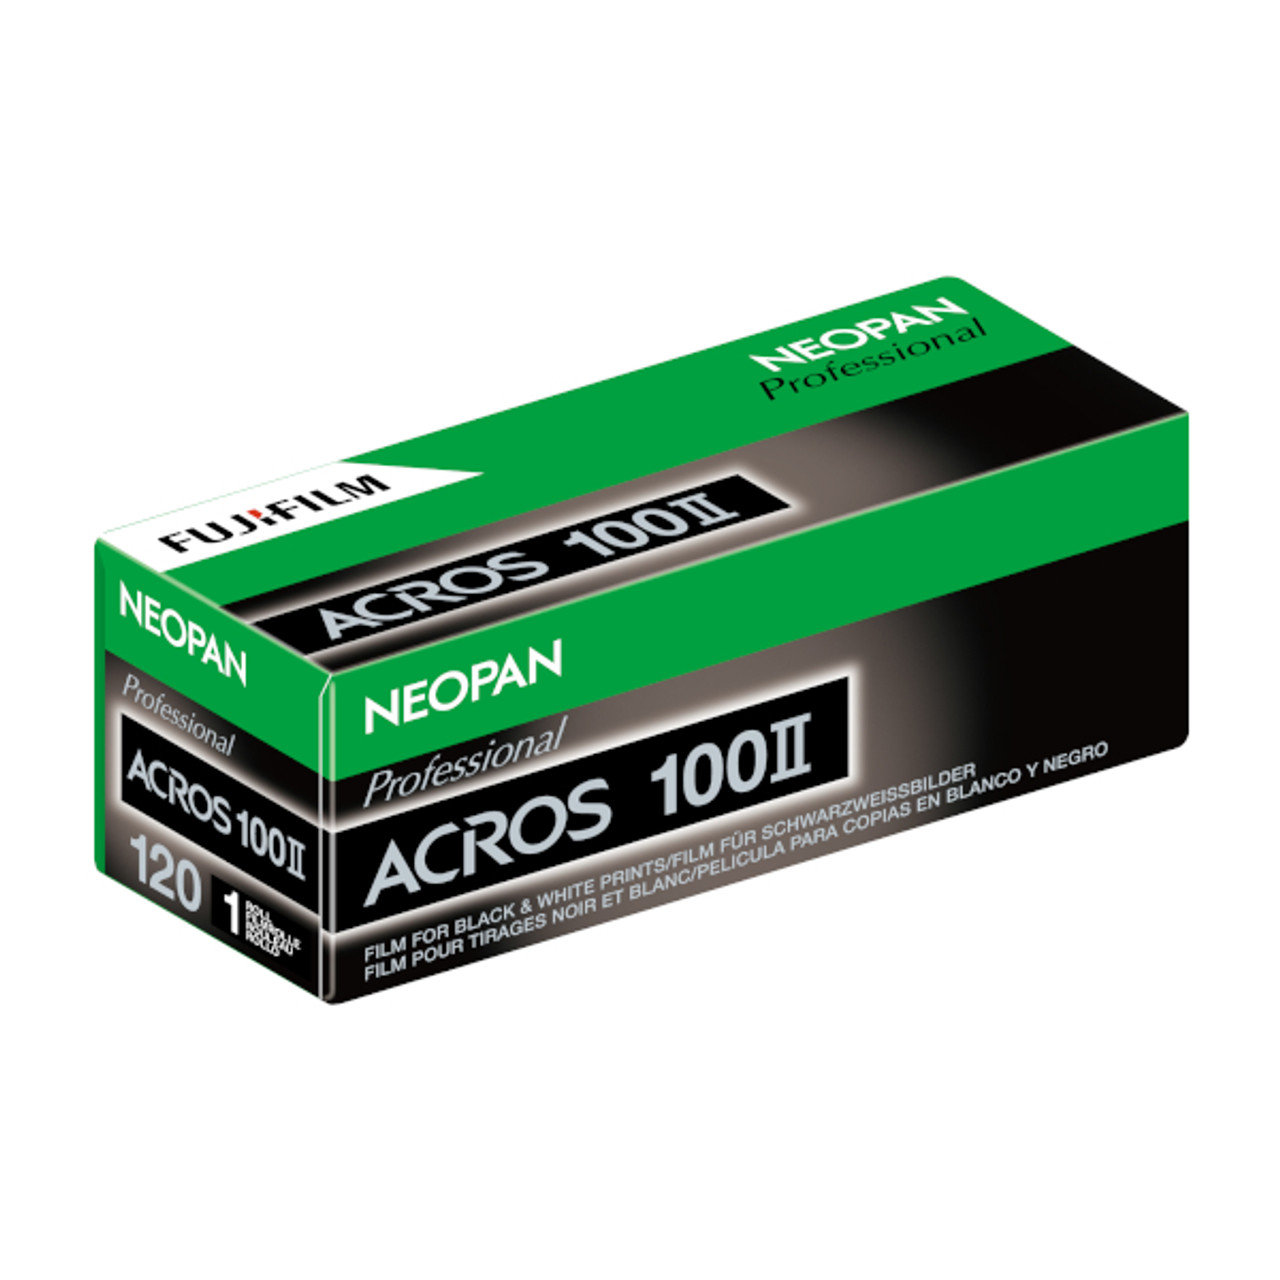 Fujifilm Neopan Acros 100 II B/W Film (120/12)